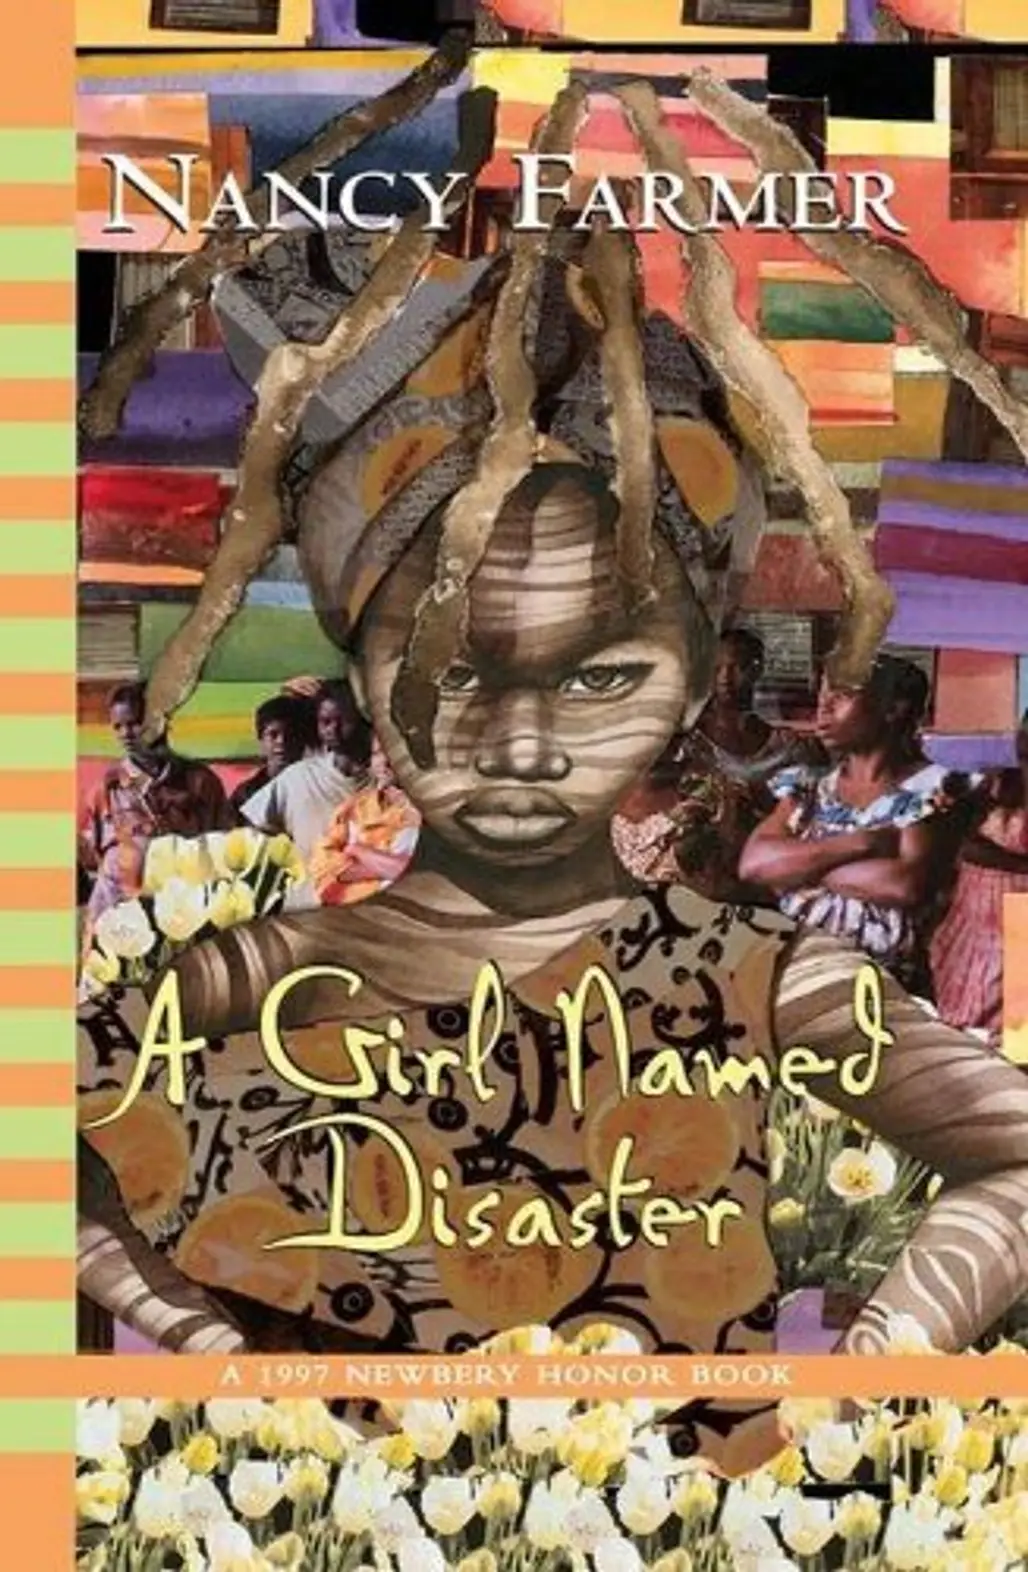 Nhamo from a Girl Named Disaster